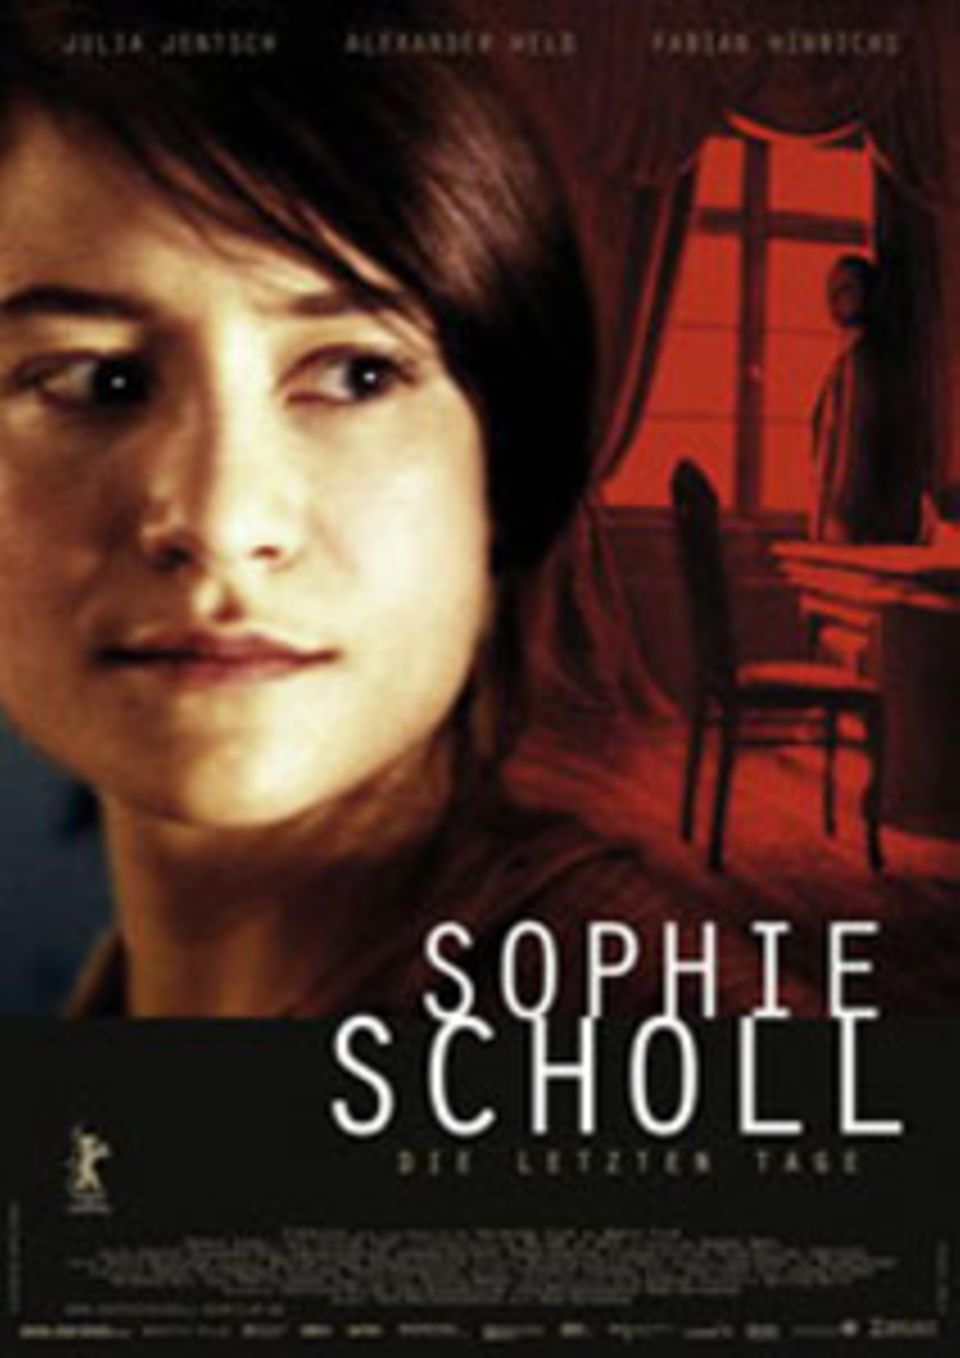 "Sophie Scholl - Die letzten Tage" als bester ausländischer Film